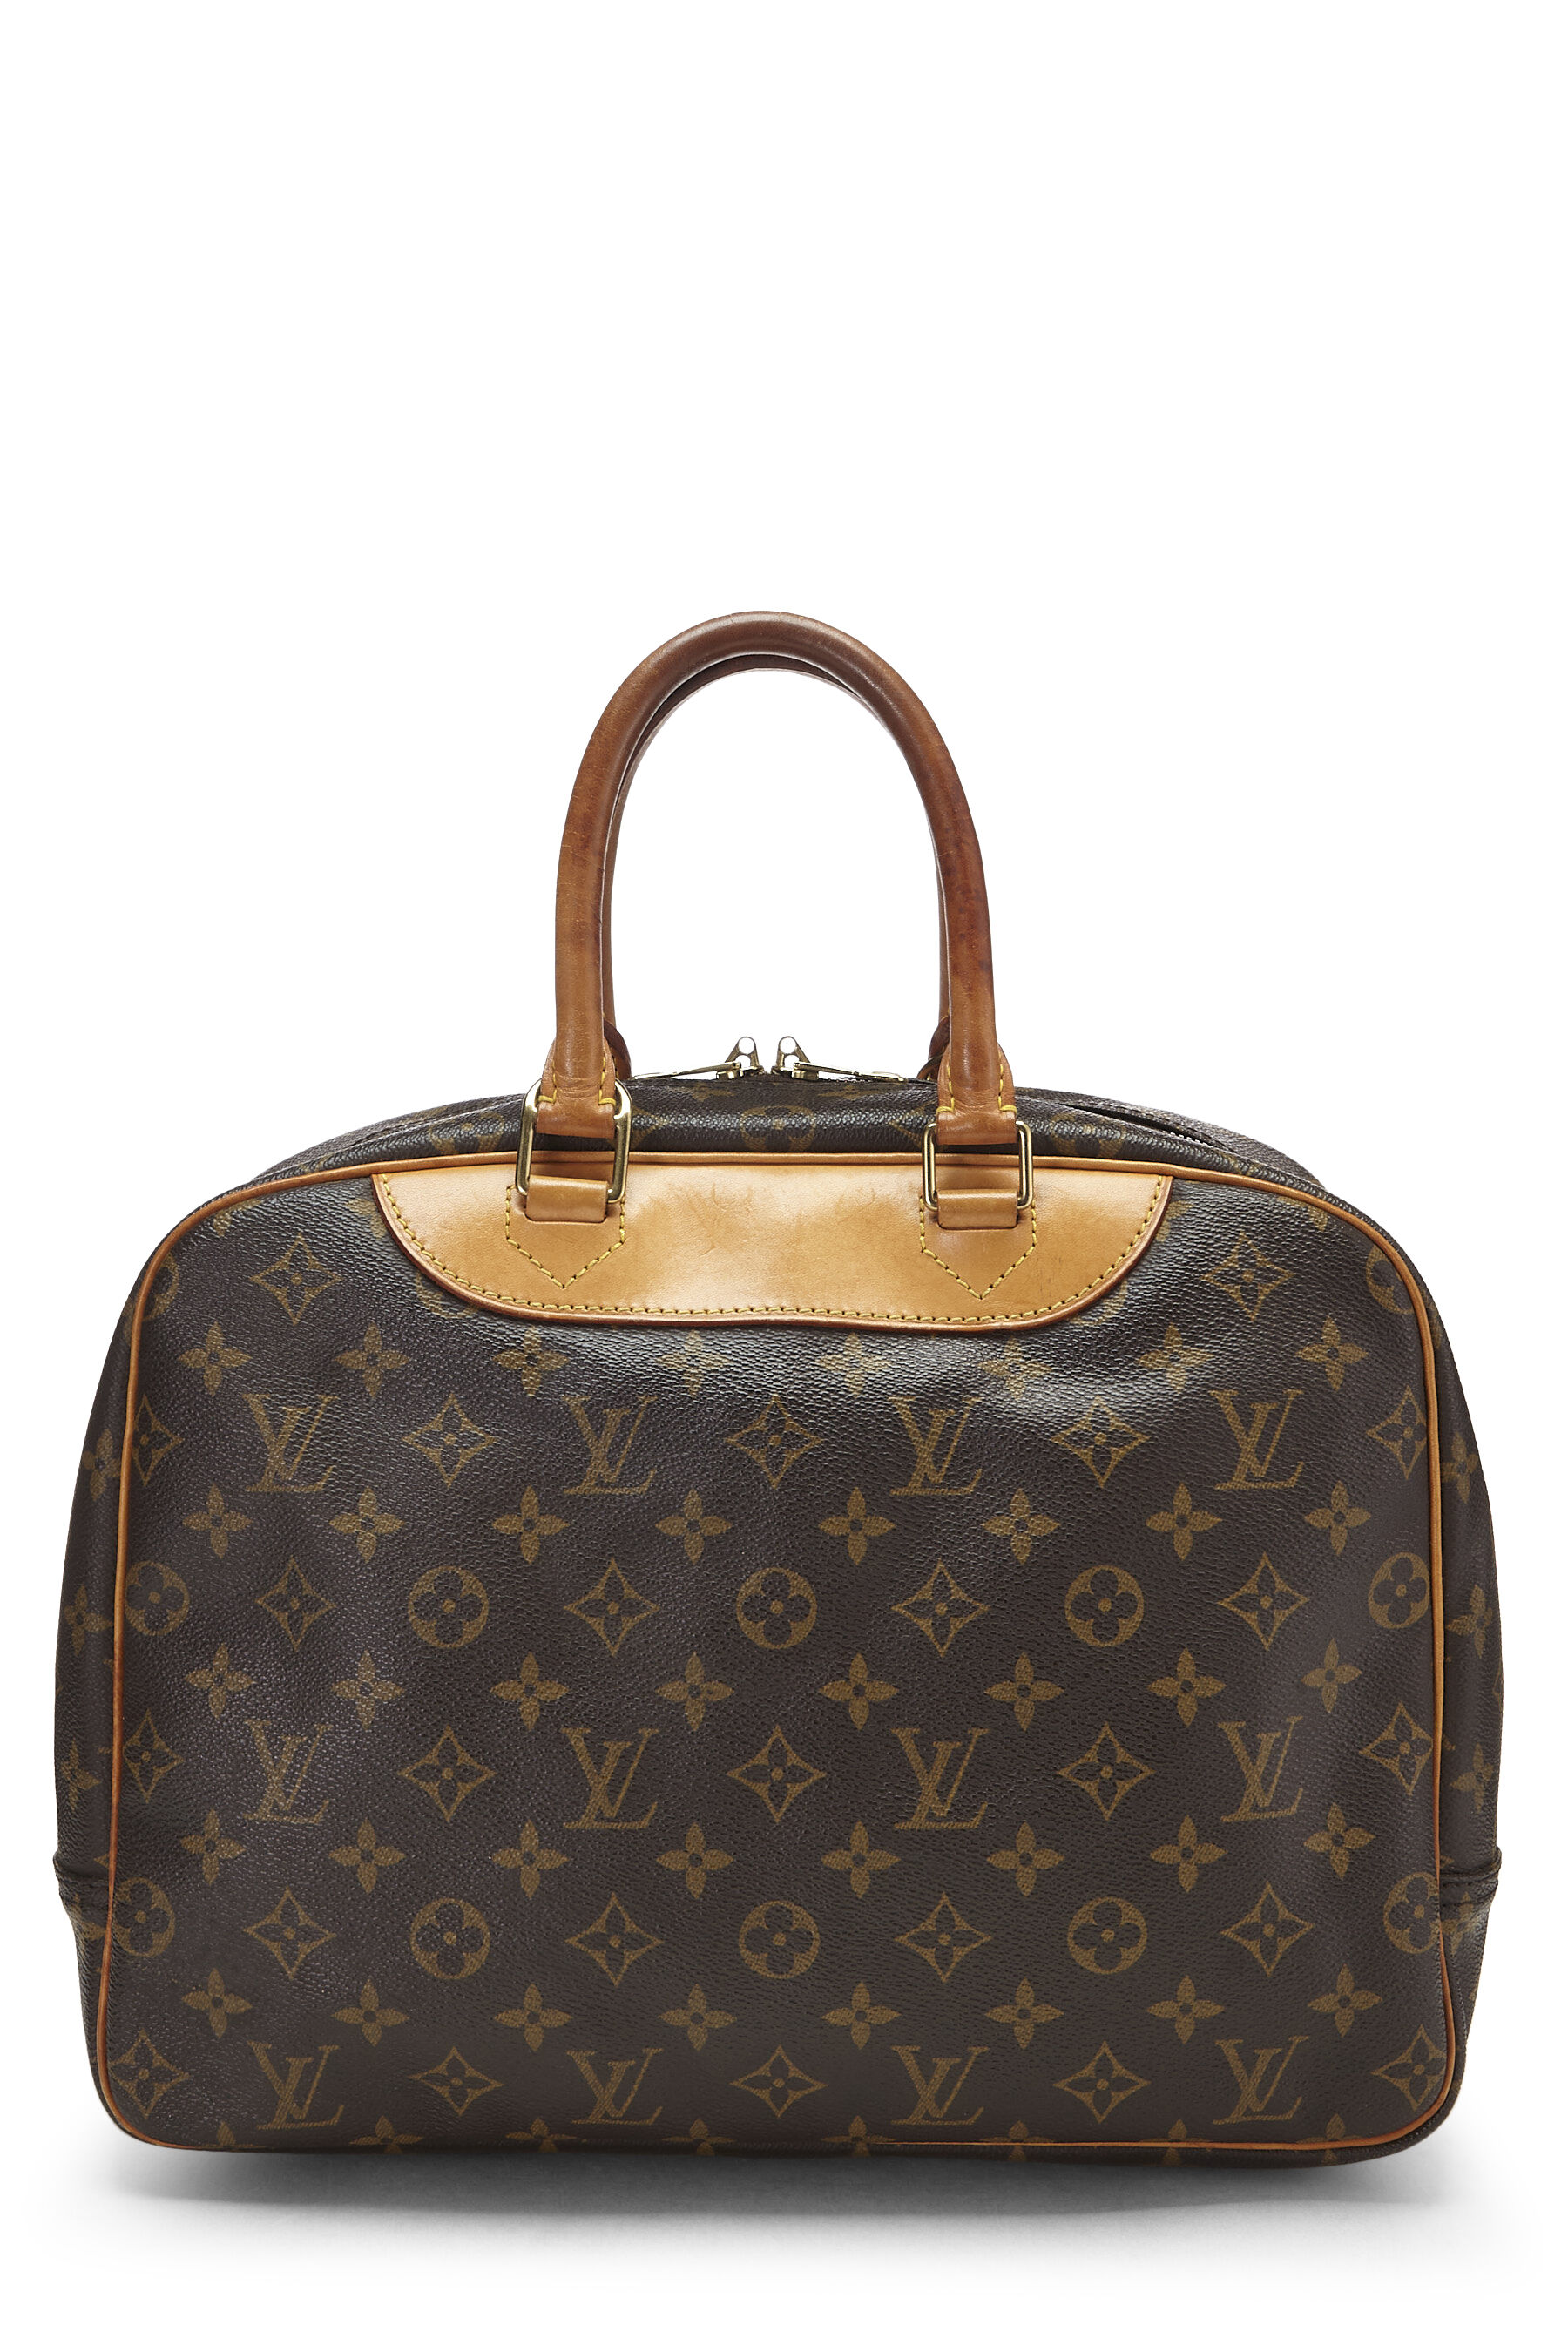 Louis Vuitton Monogram Deauville Bag w/ Strap - Brown Satchels